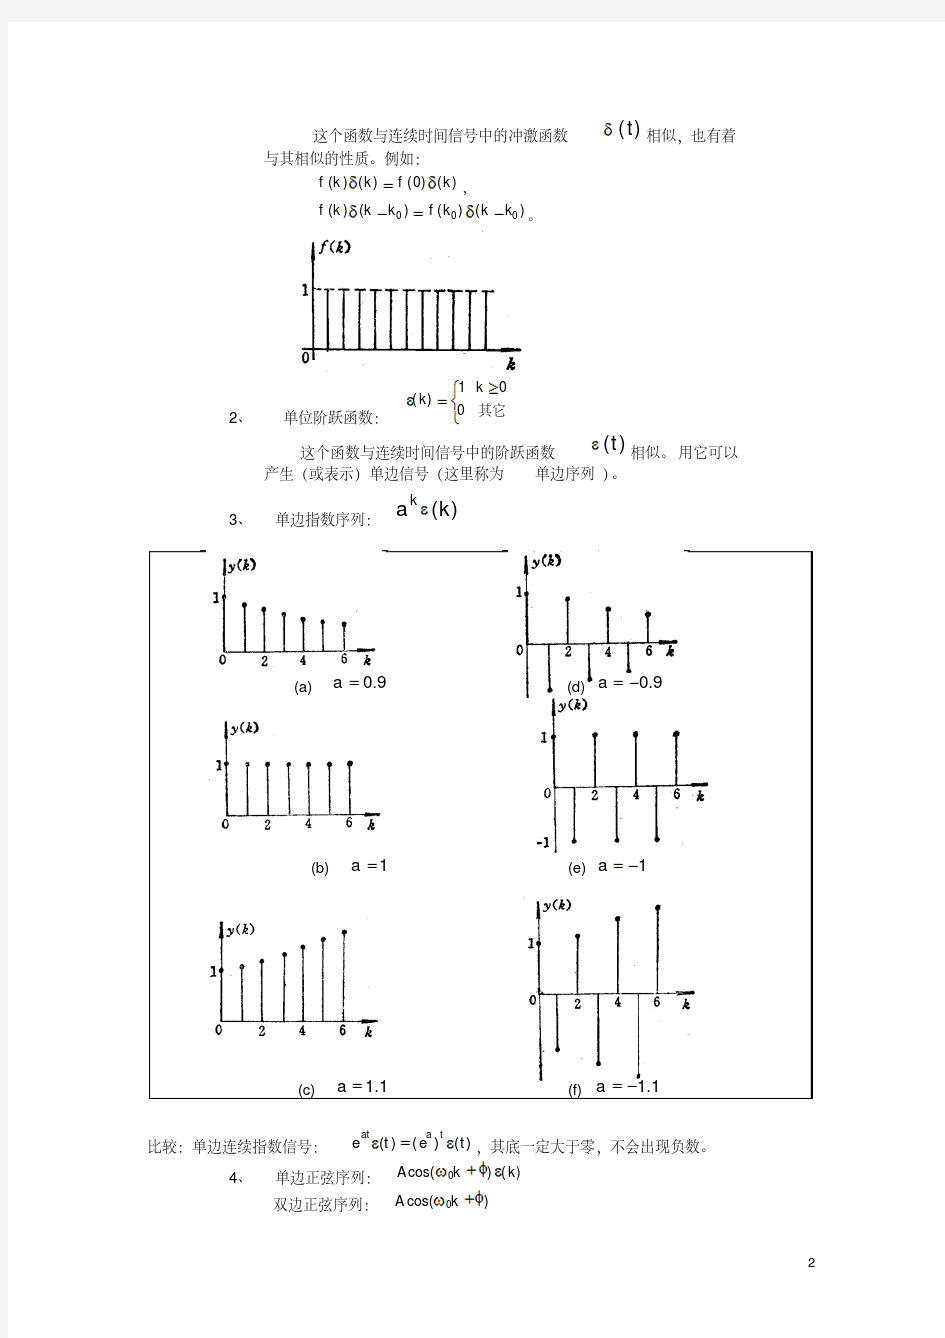 新版离散时间信号与离散时间系统..-新版-精选.pdf